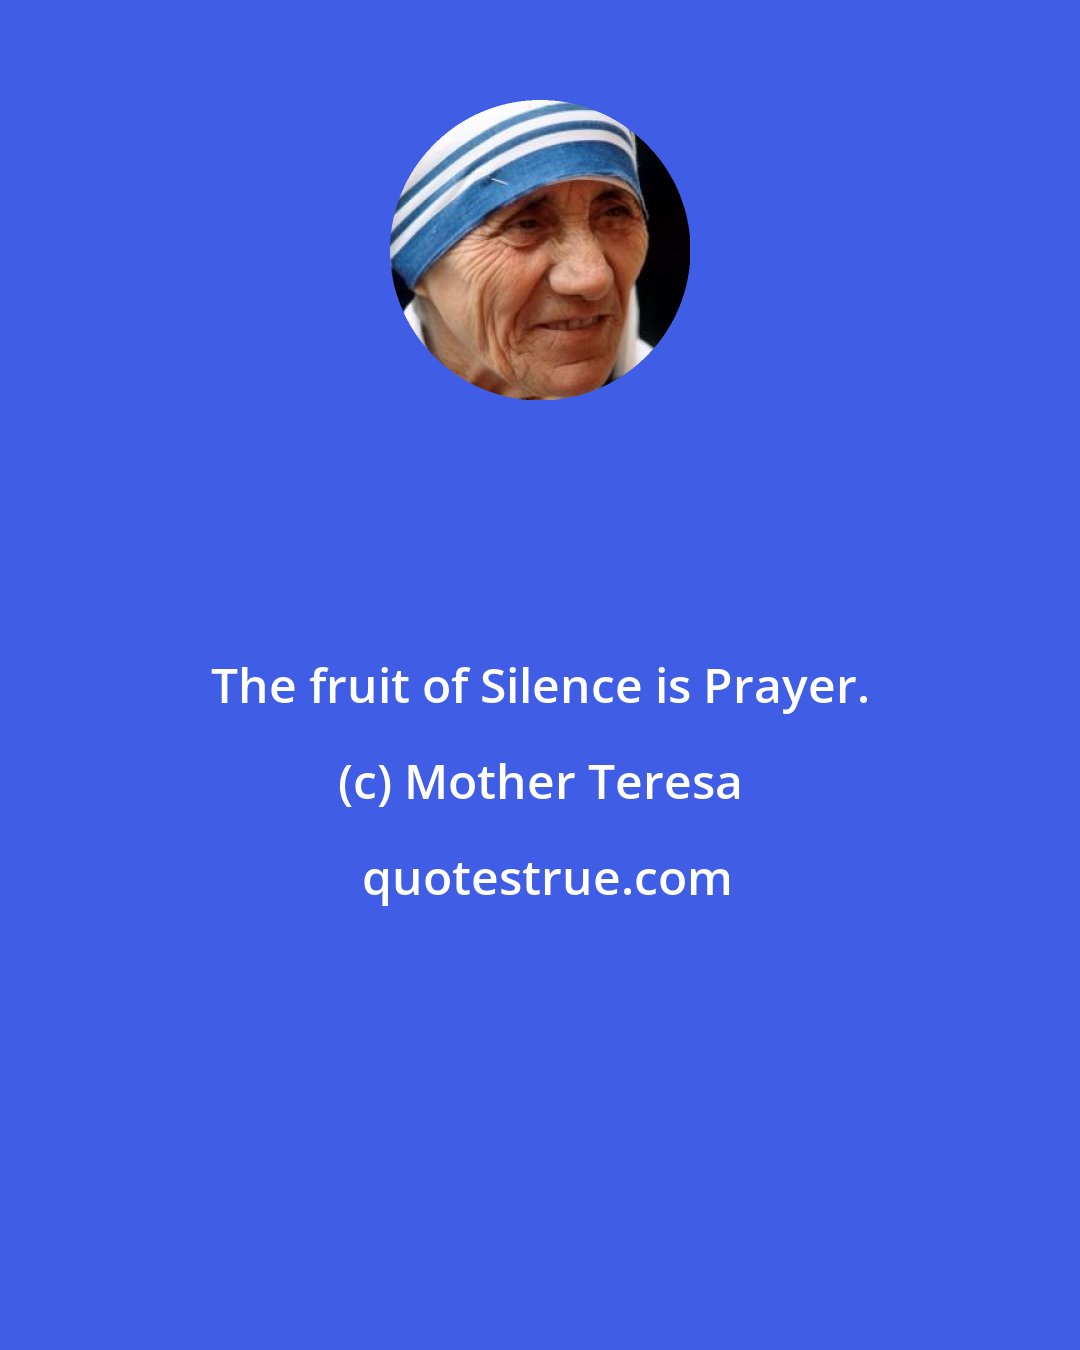 Mother Teresa: The fruit of Silence is Prayer.